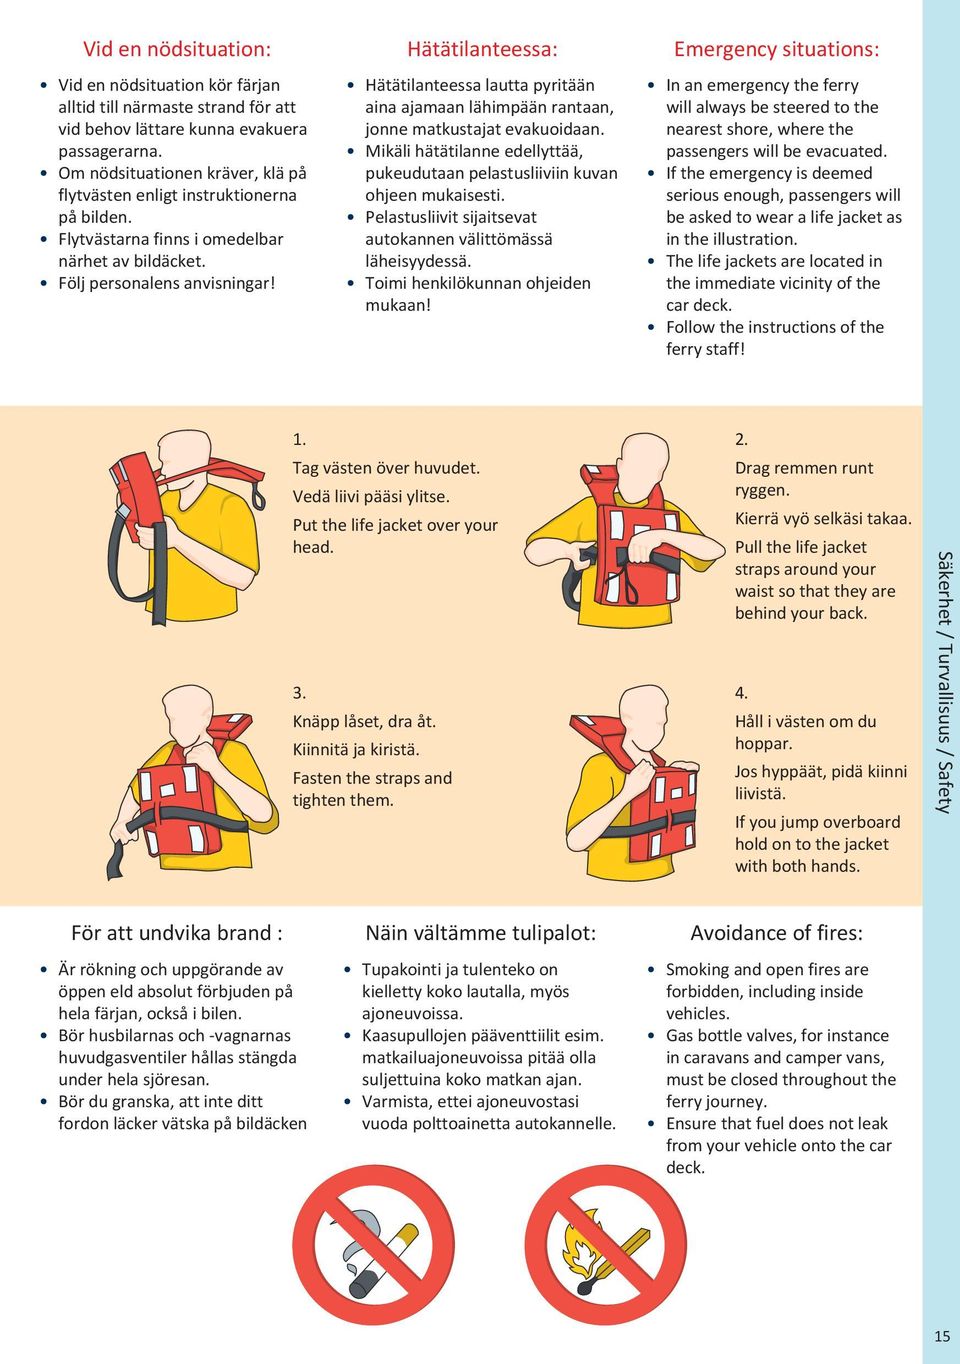 Hätätilanteessa: Hätätilanteessa lautta pyritään aina ajamaan lähimpään rantaan, jonne matkustajat evakuoidaan. Mikäli hätätilanne edellyttää, pukeudutaan pelastusliiviin kuvan ohjeen mukaisesti.